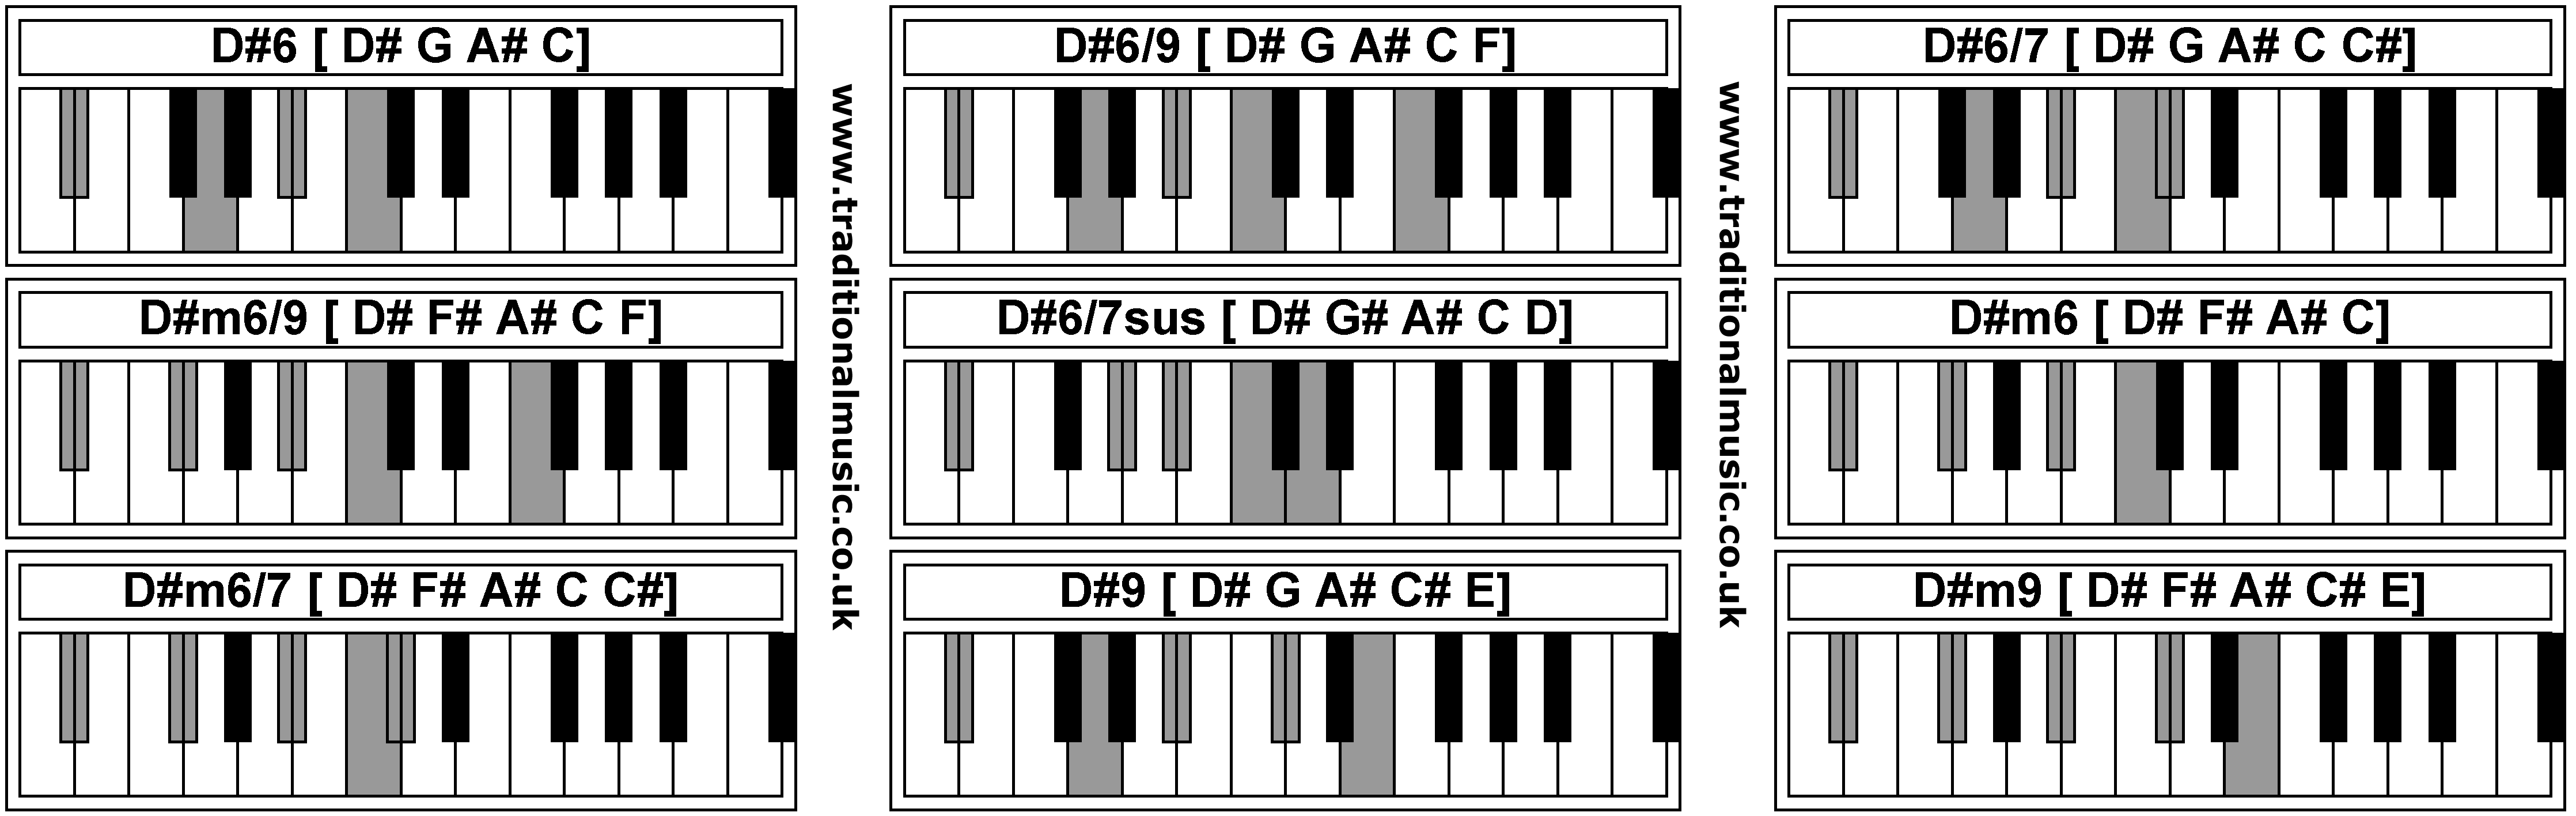 Piano Chords - D#6  D#6/9  D#6/7  D#m6/9  D#6/7sus  D#m6  D#m6/7  D#9  D#m9 